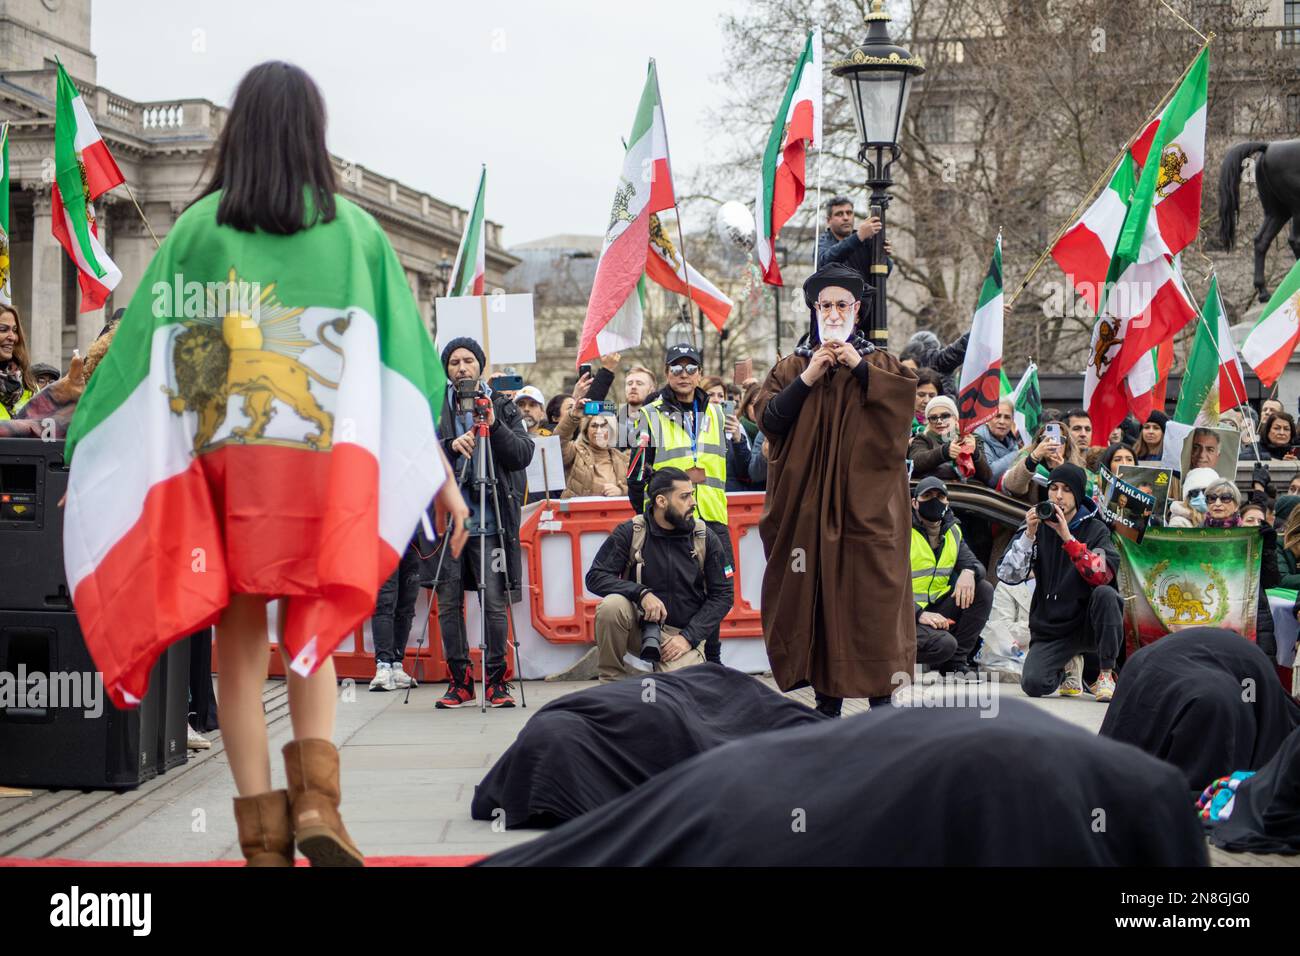 Londra, Regno Unito - 11 febbraio 2023: Esecuzione di una battaglia tra gli Ayatollah e una ragazza iraniana su hijab e libertà. Oggi ricorre il 44th° anniversario della Rivoluzione islamica in Iran. Dopo più di cinque mesi di continua protesta a sostegno della donna, della vita, del movimento per la libertà, migliaia di manifestanti si sono riuniti a Trafalgar Sq. Denunciare il regime in Iran. I manifestanti tenevano la bandiera Shir-o-Khorshid (Leone e Sole) dell'Iran. Questa bandiera è stata una parte dell'identità nazionale iraniana per secoli, che è stata cambiata dopo la Rivoluzione islamica nel 1979. Credit: Sinai Noor/Alamy Live News Foto Stock